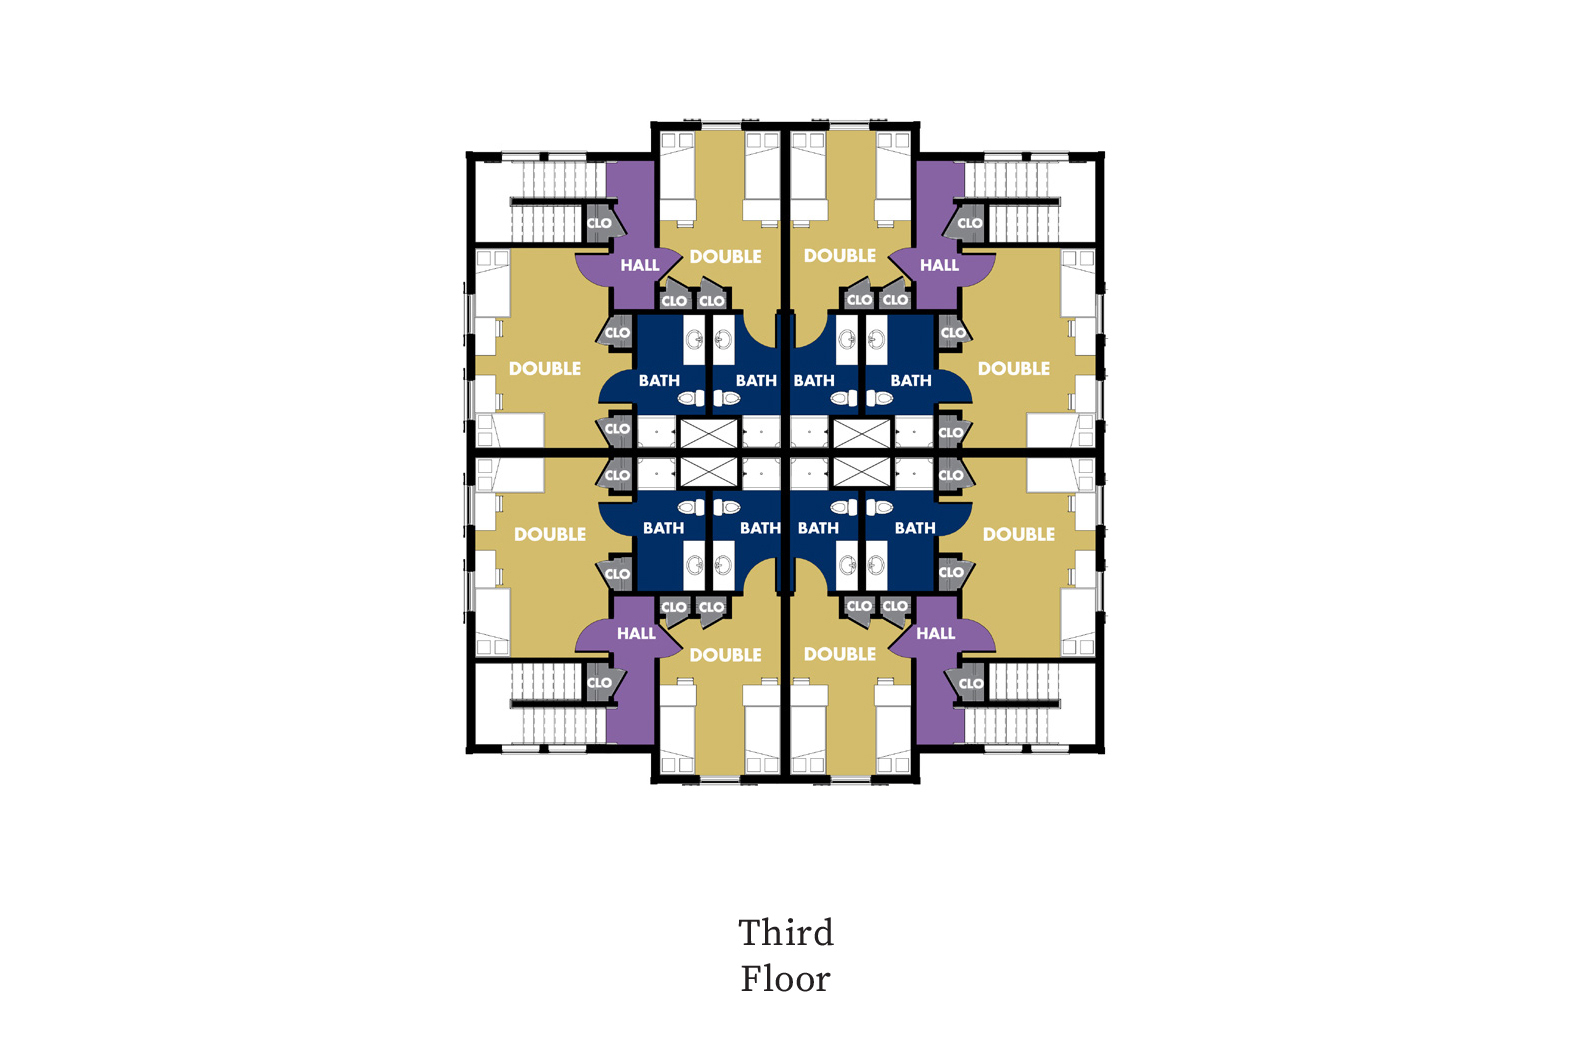 floor plan for third floor of townhome